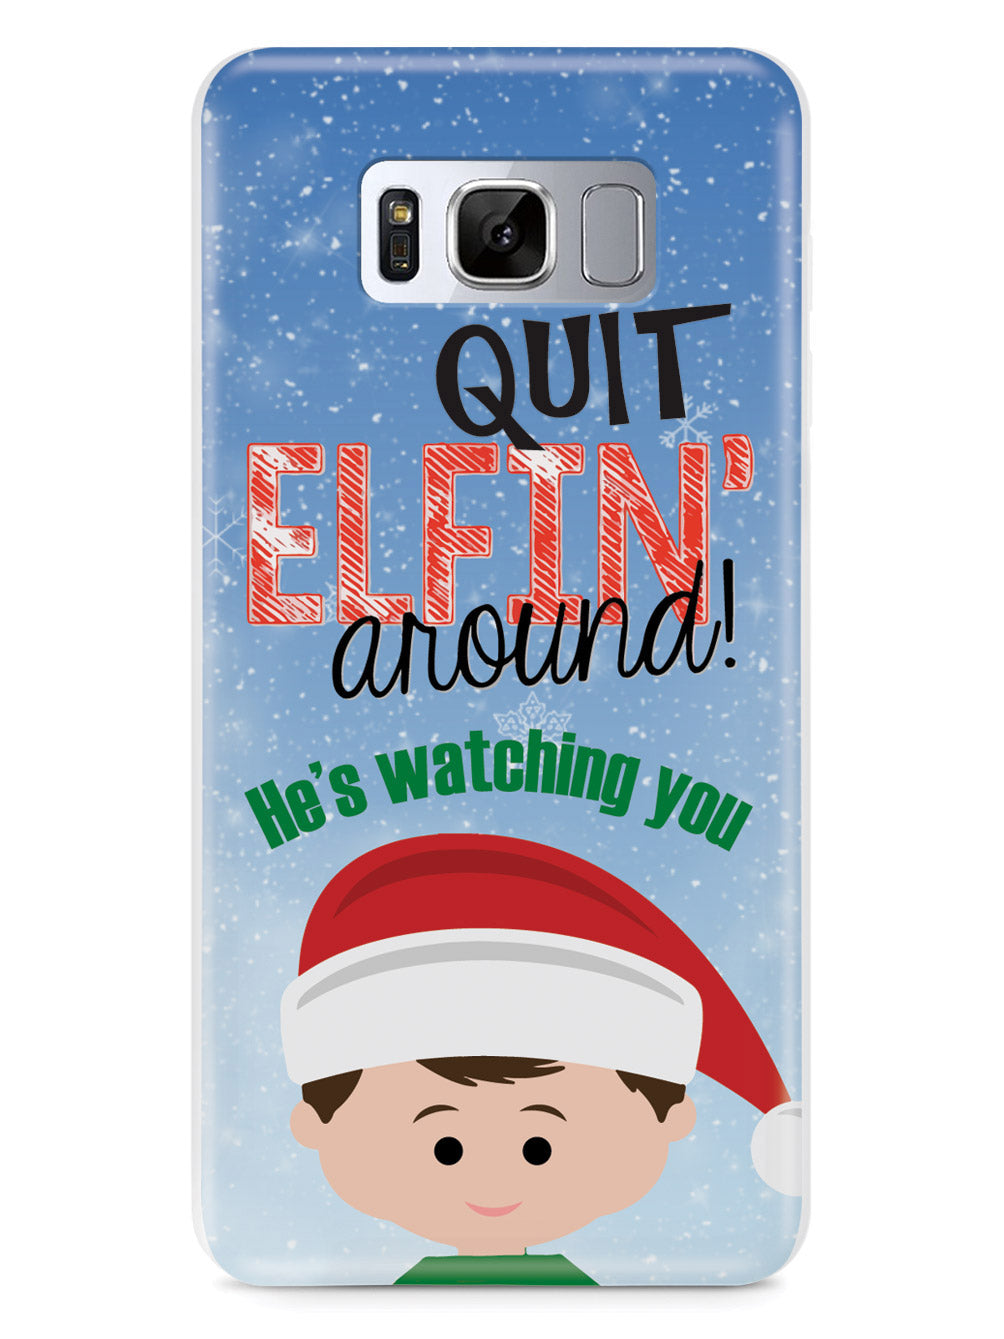 Quit Elfin' Around Elf Christmas Case